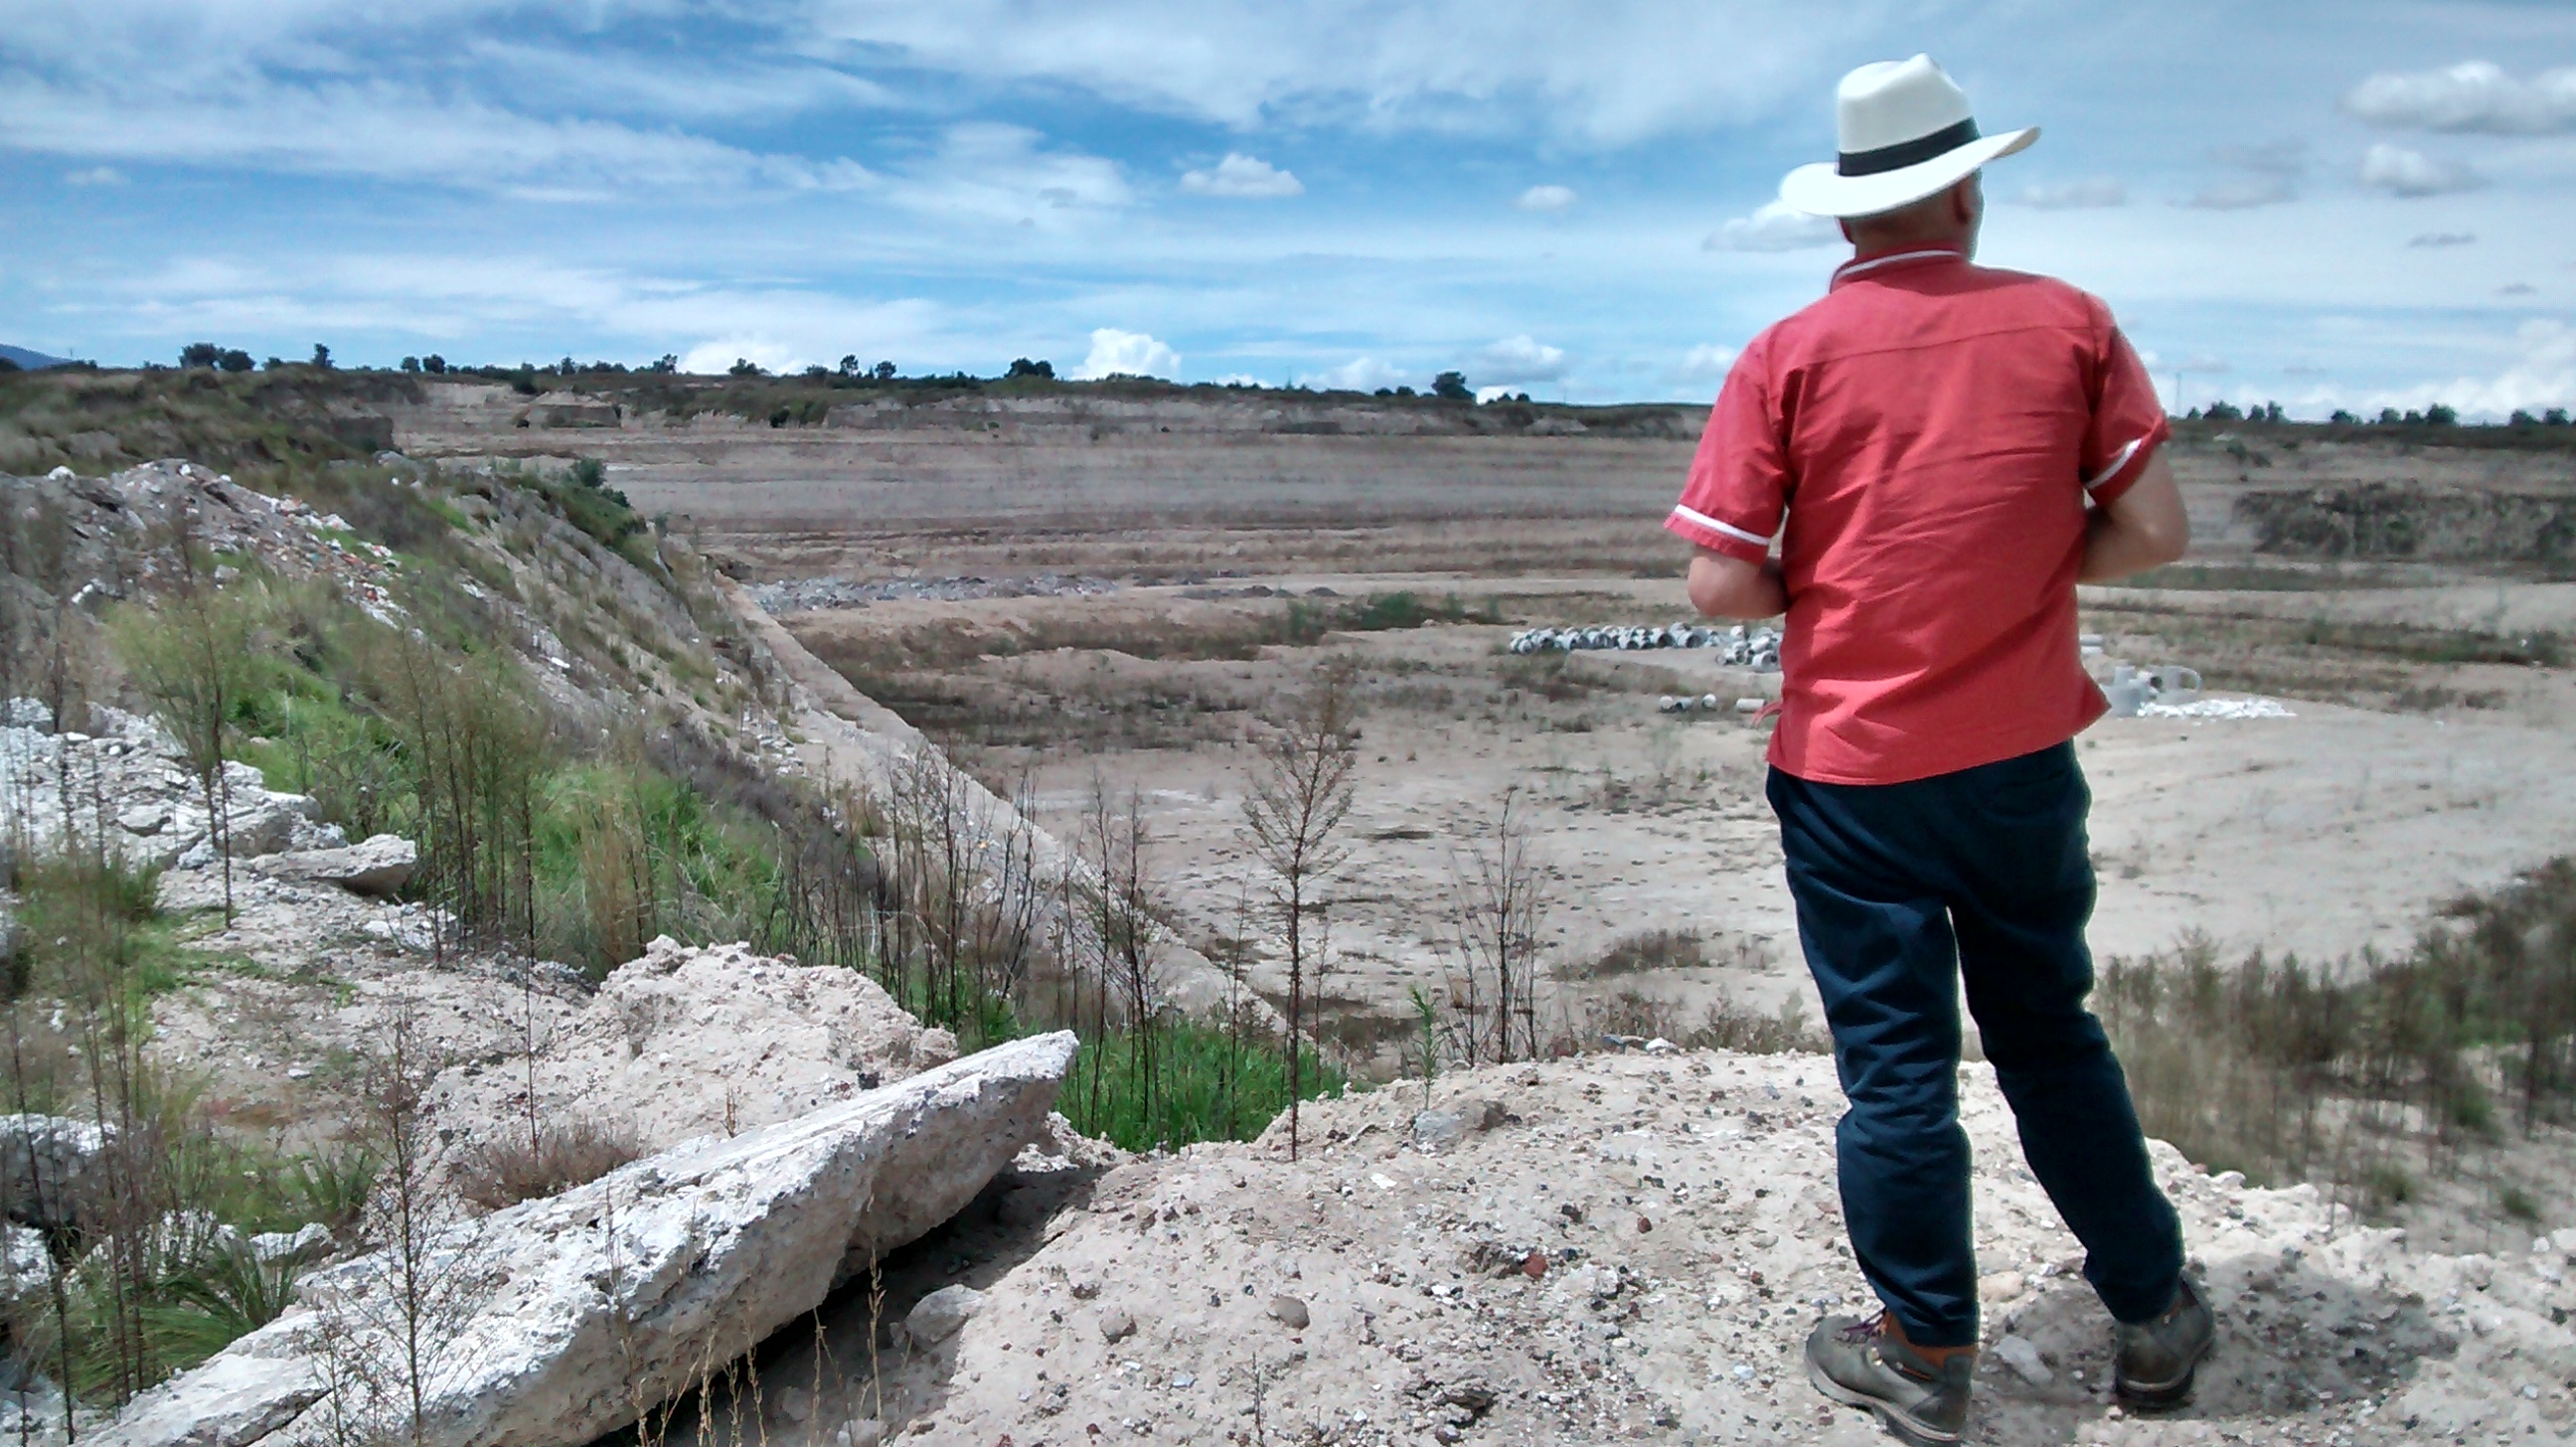 Construcción de Audi ocasiona daños en tierras de Chiapa y Nopalucan